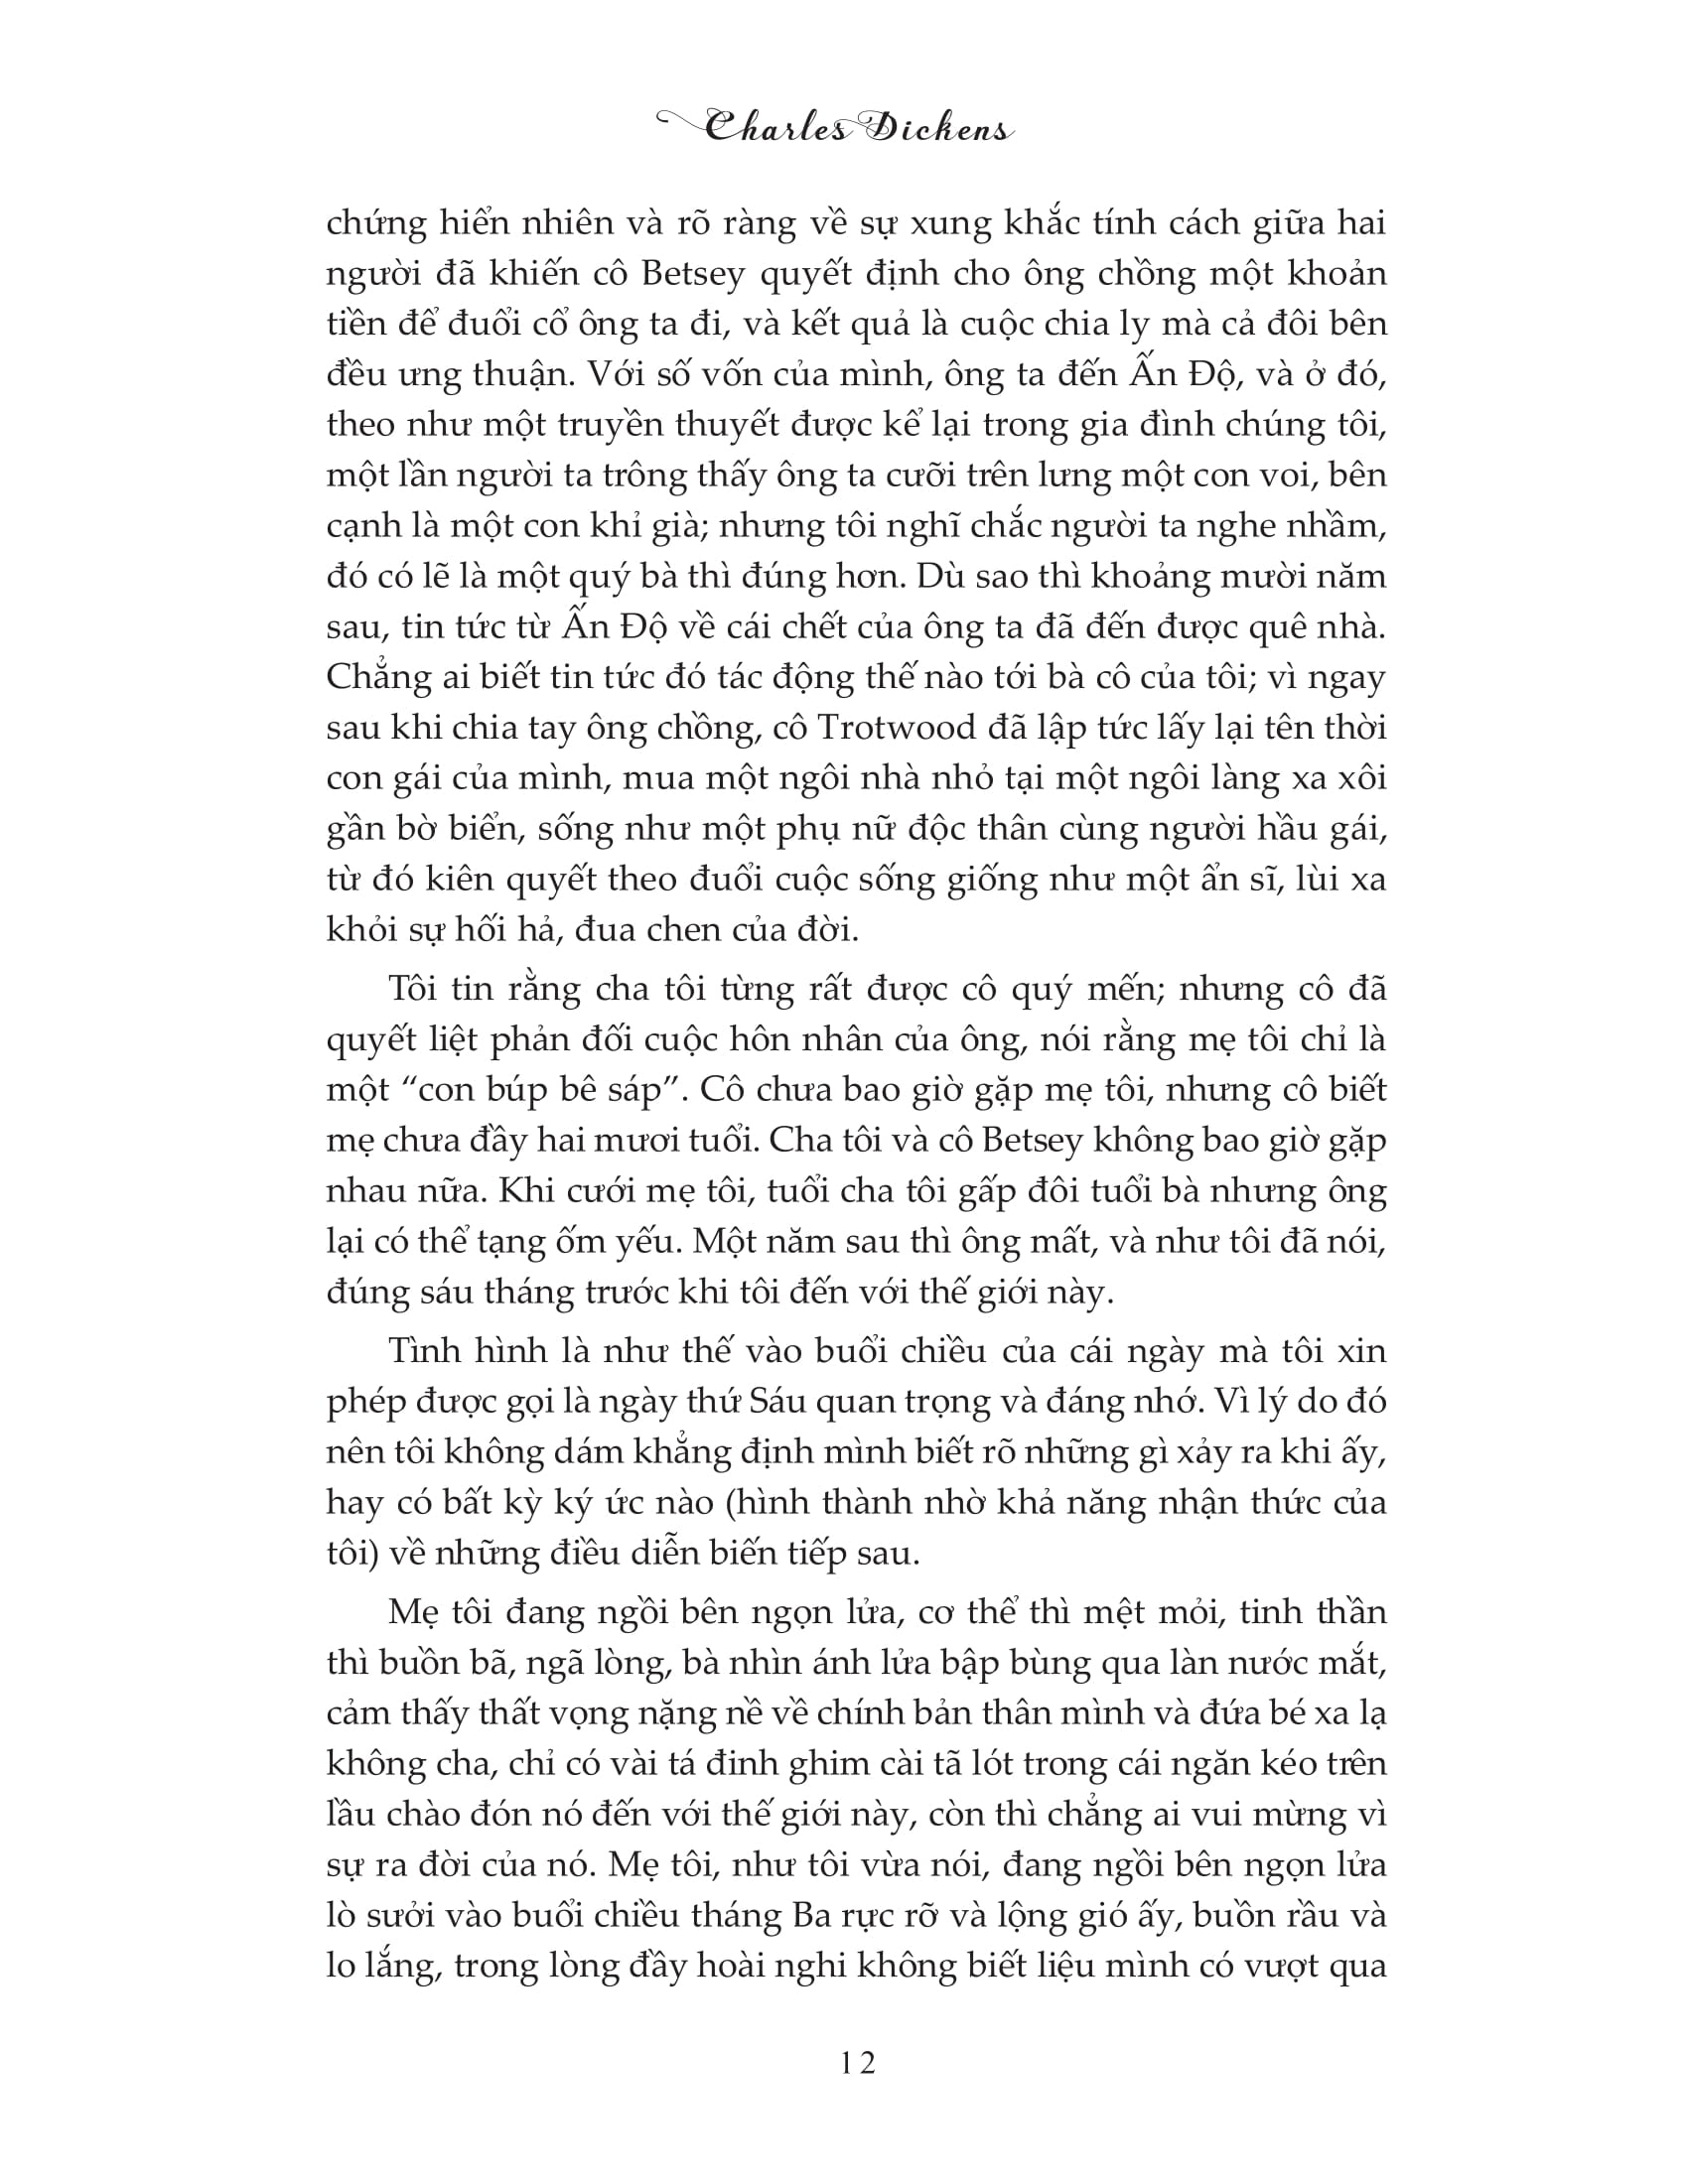 David Copperfield - Tập 1 PDF